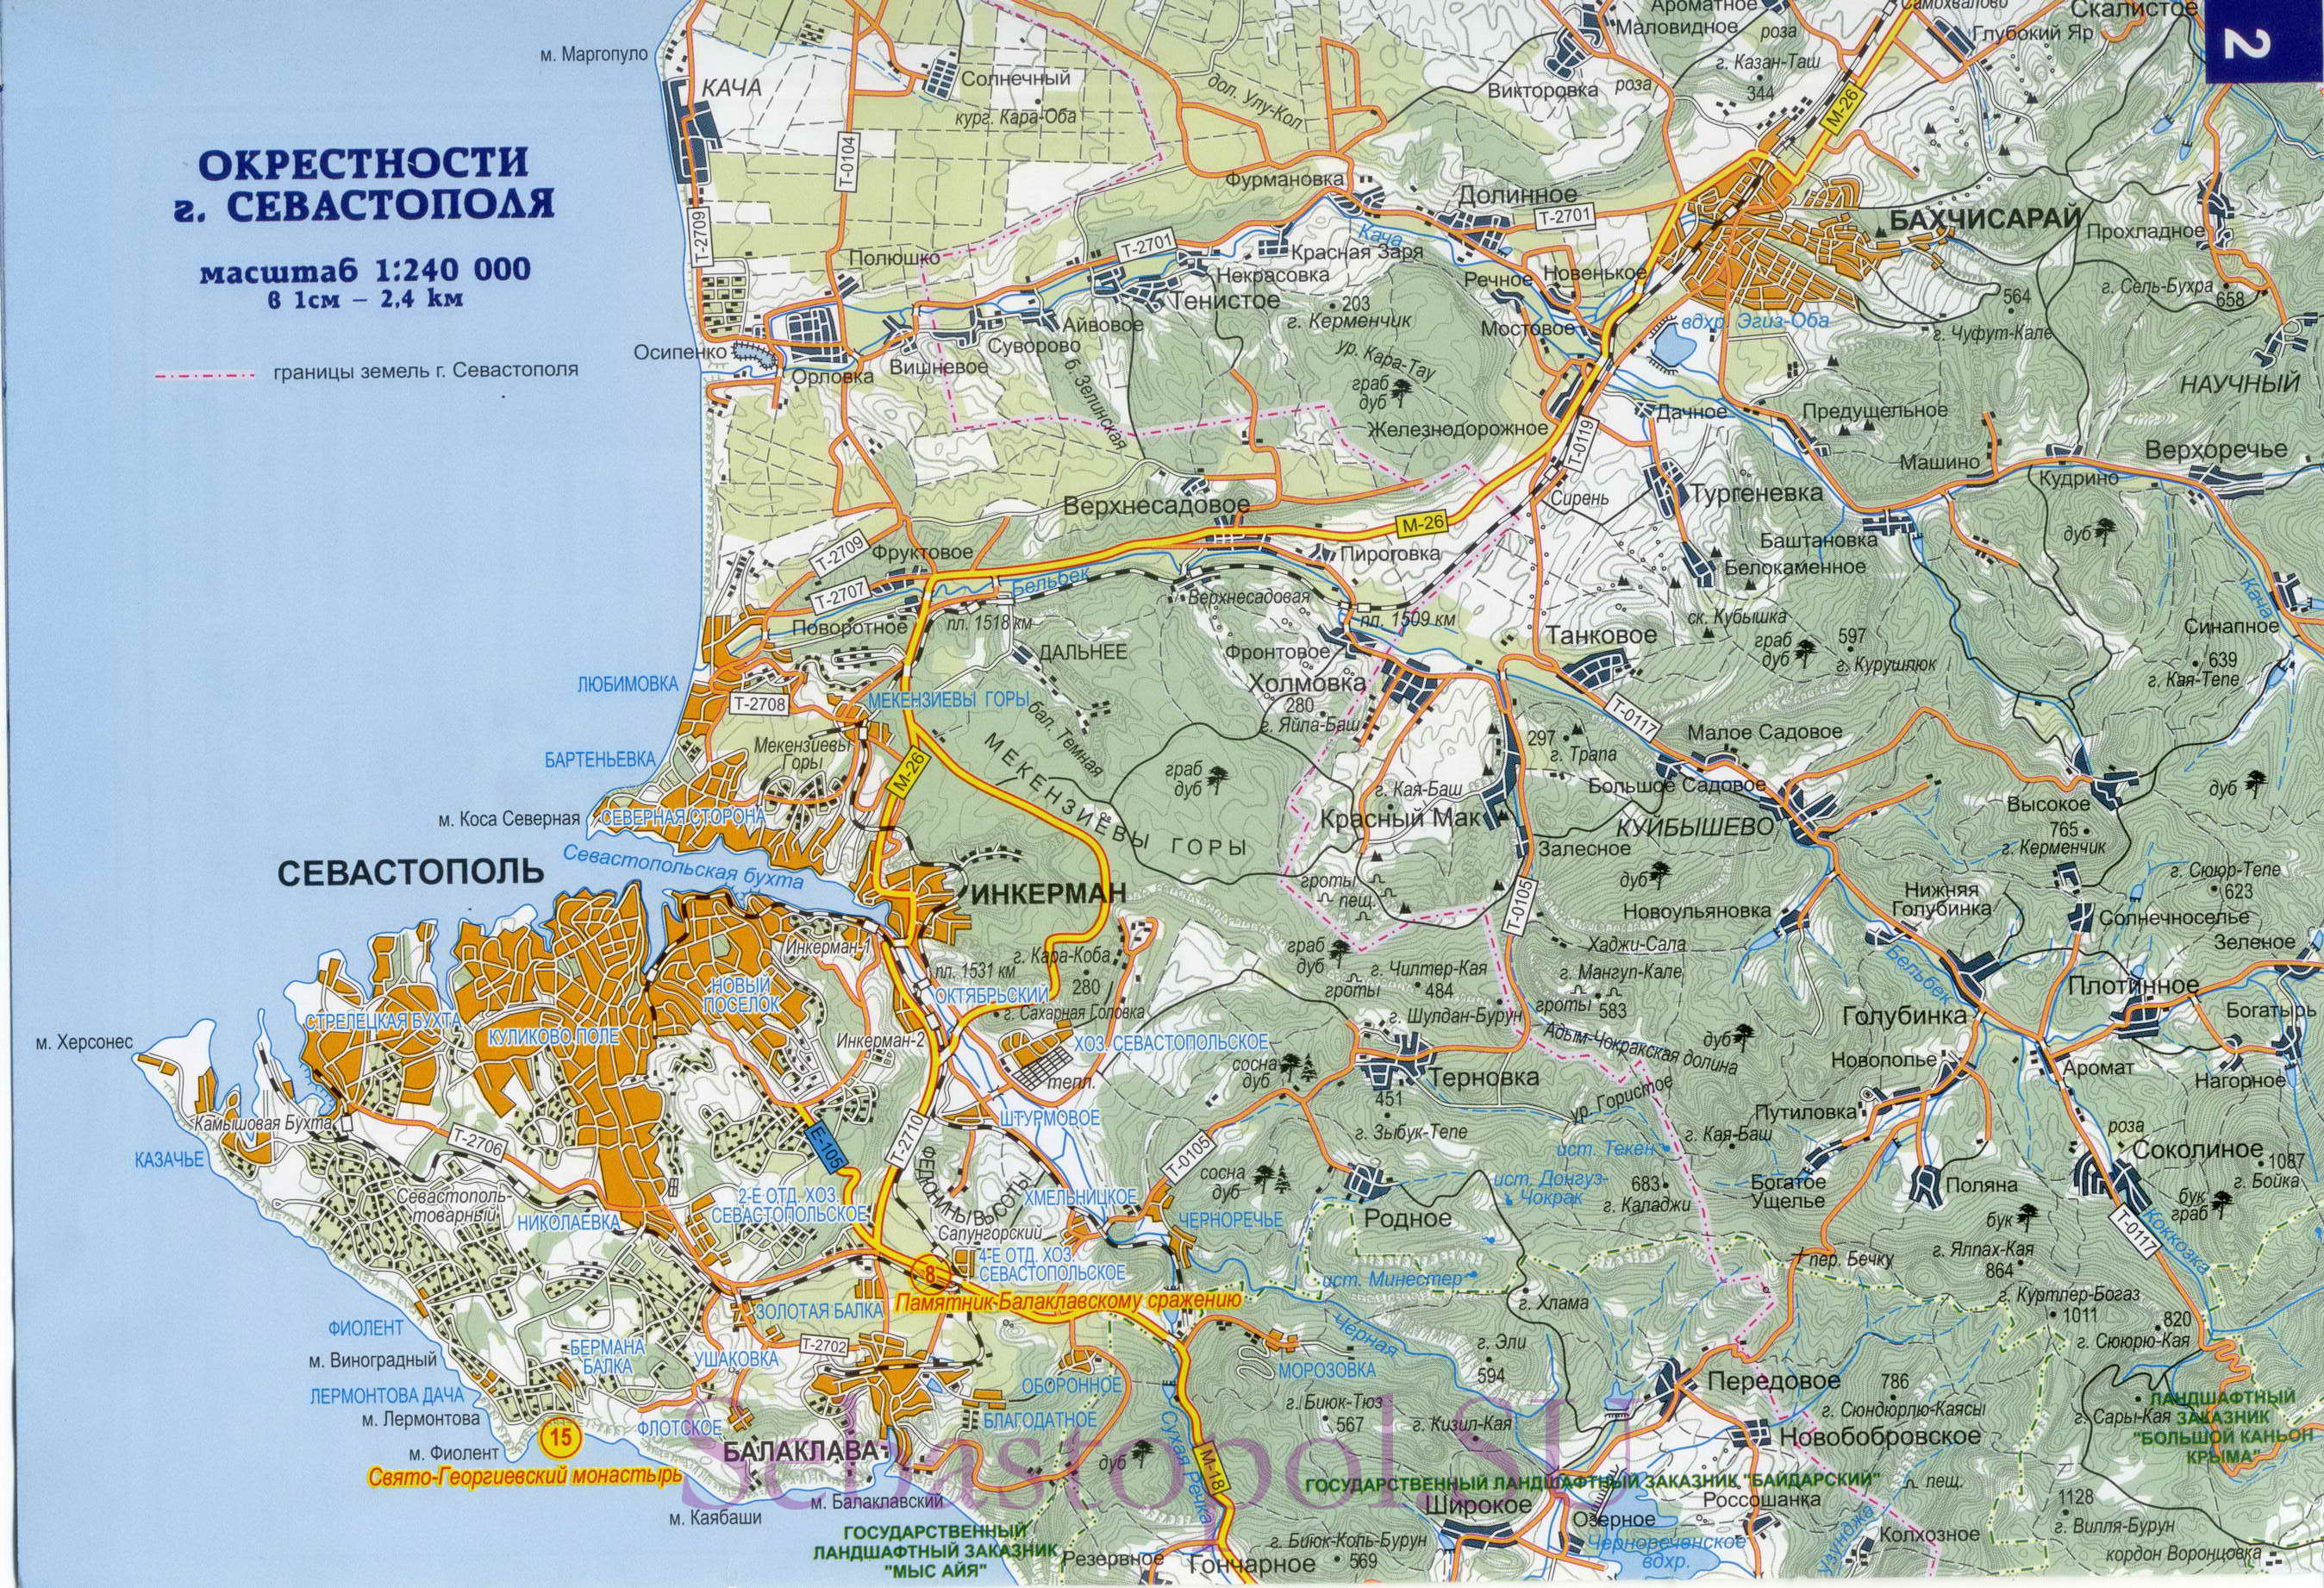  Карта Севастополя и окрестностей. Подробная карта города Севастополь и окрестностей, A0 - 